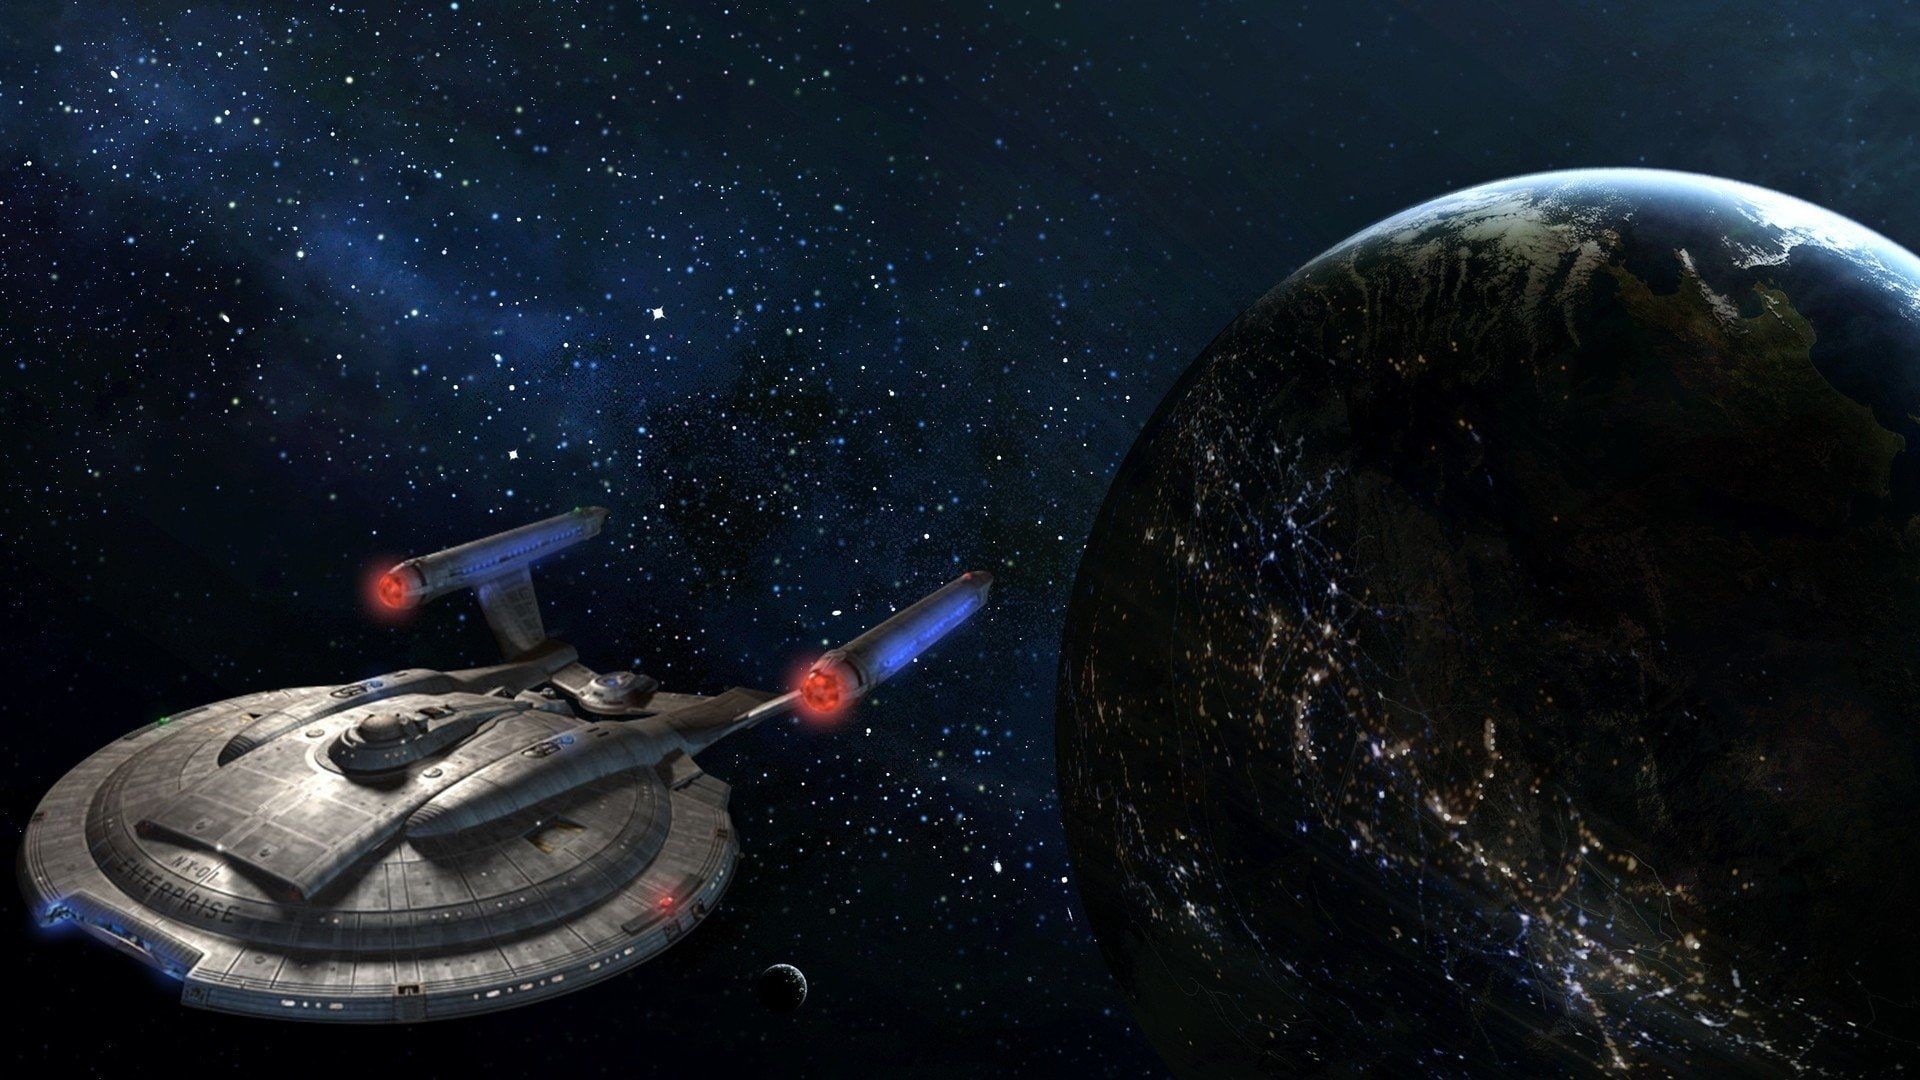 Star Trek Enterprise, 1080p wallpaper, HD desktop backgrounds, Starfleet vessel, 1920x1080 Full HD Desktop